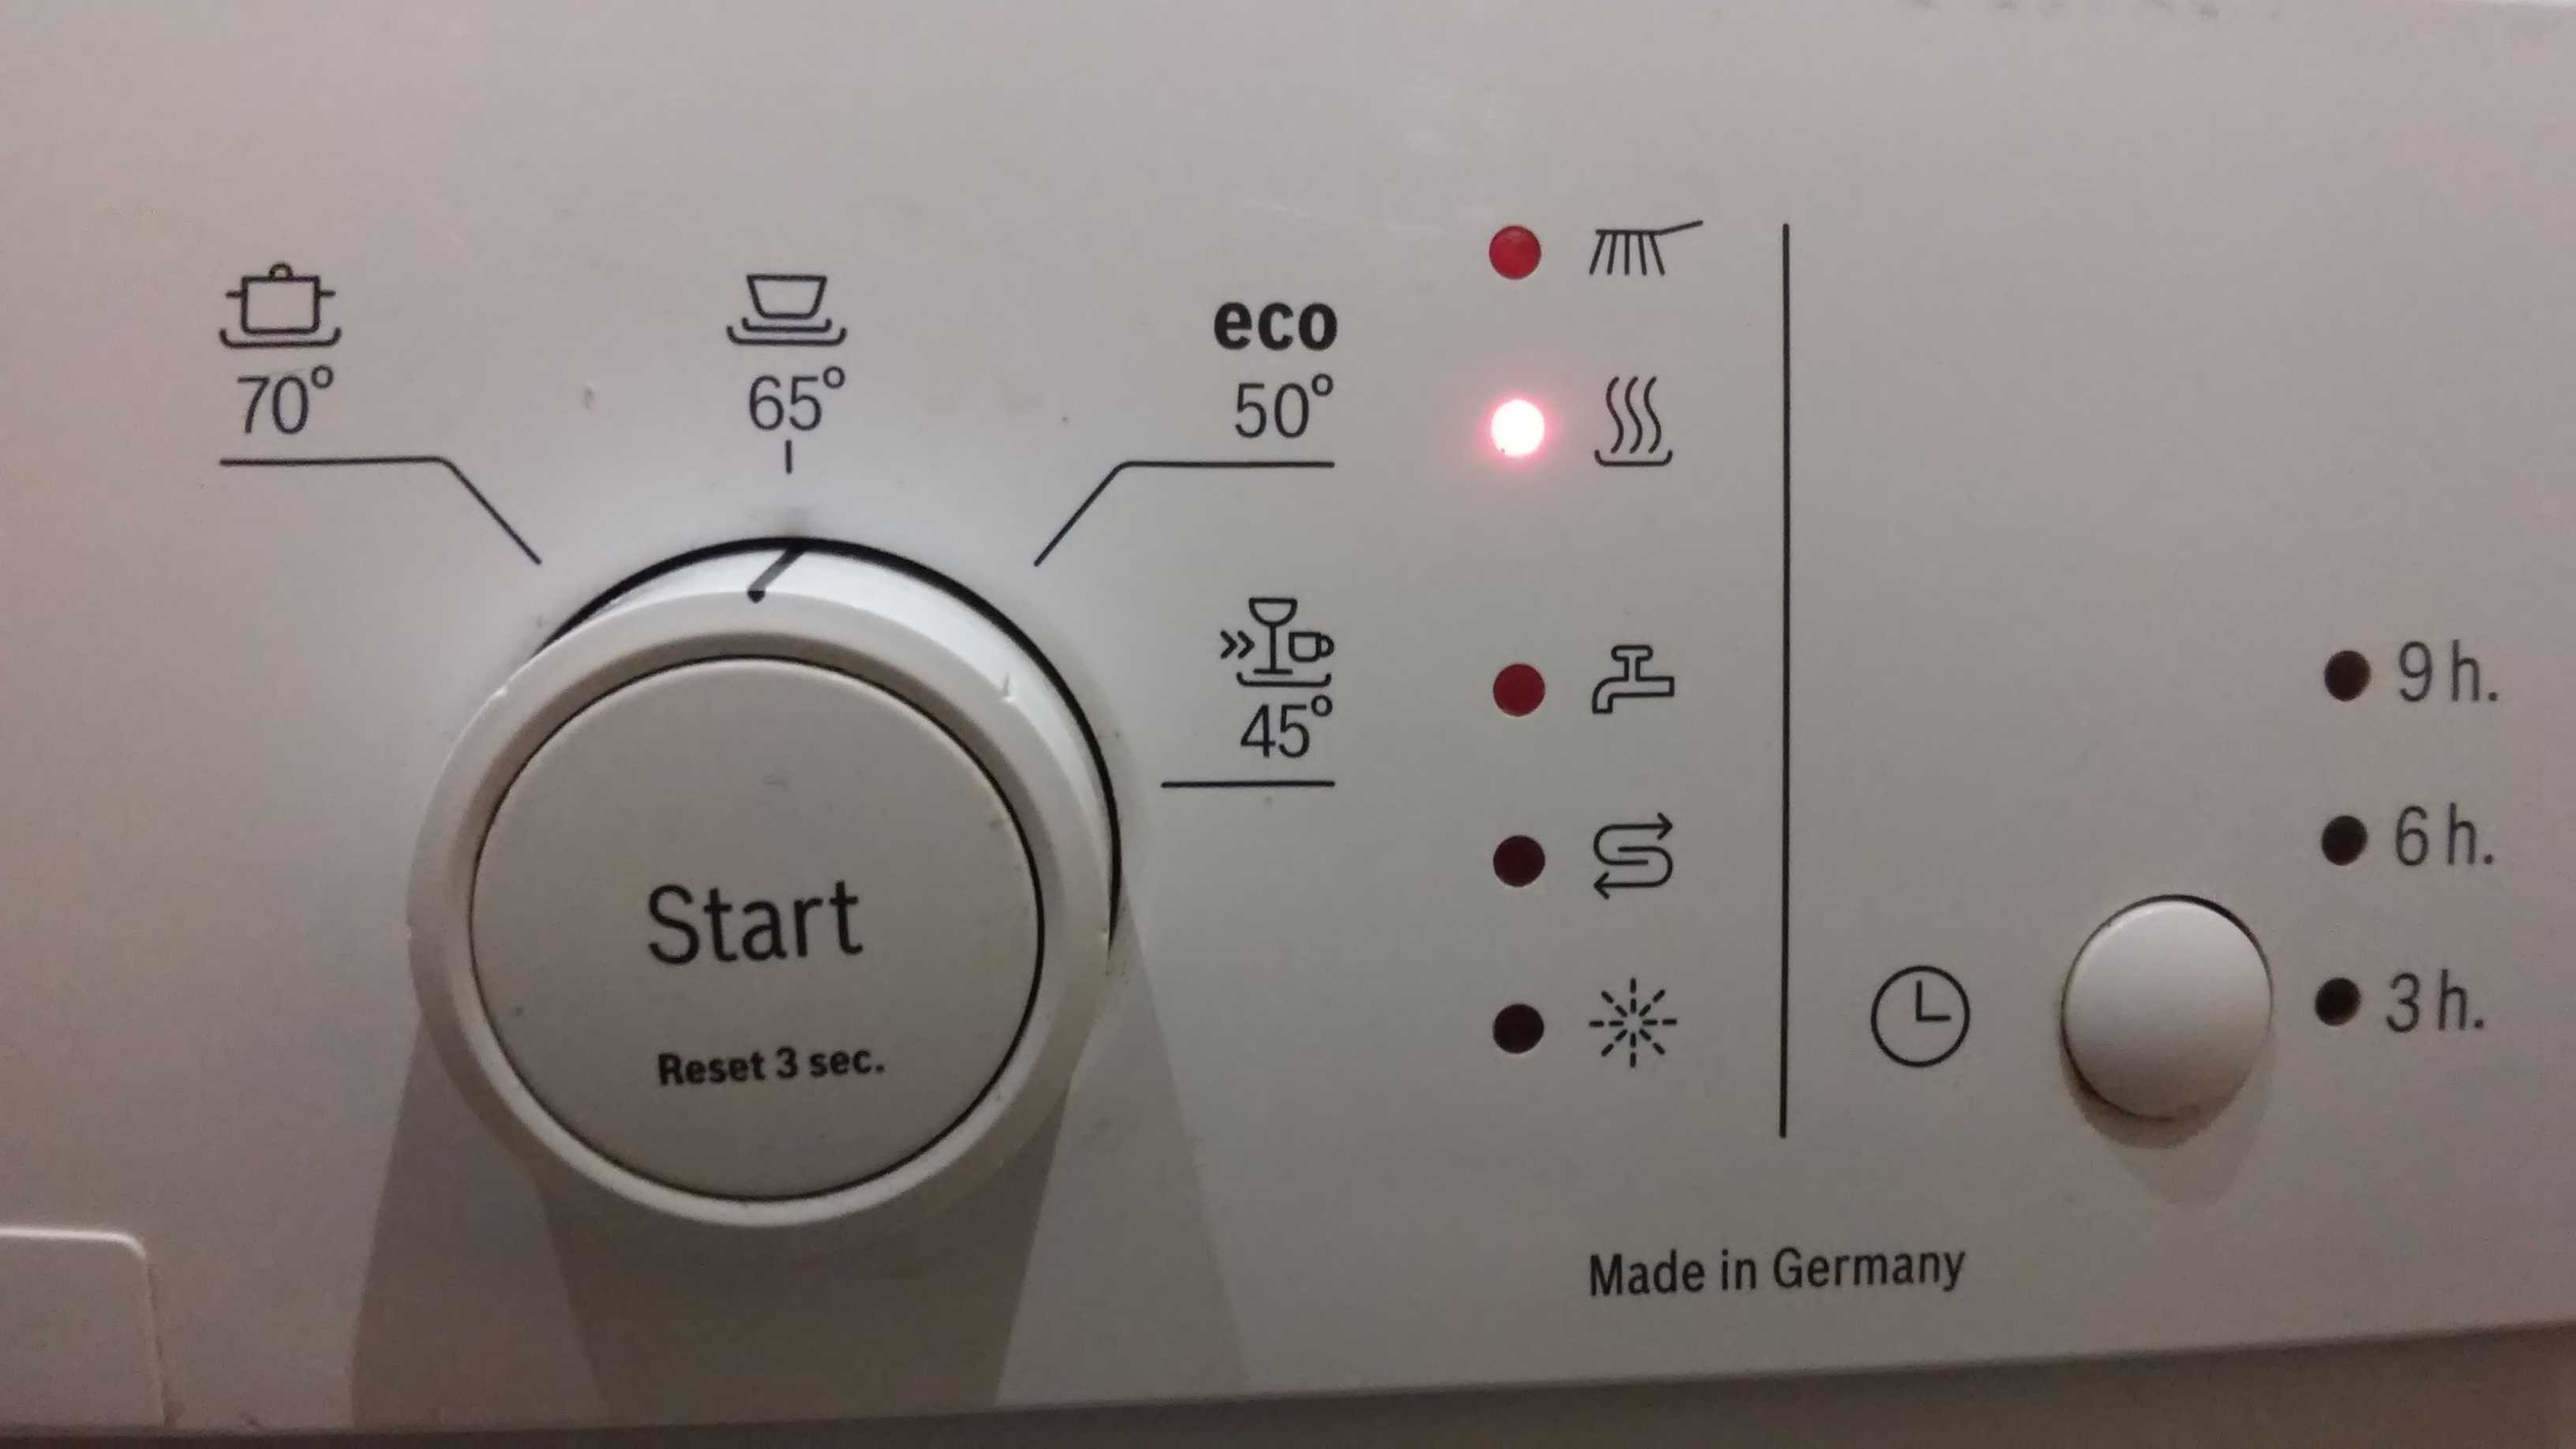 Ошибка е15 в посудомоечной машине bosch: как исправить, причины, видео